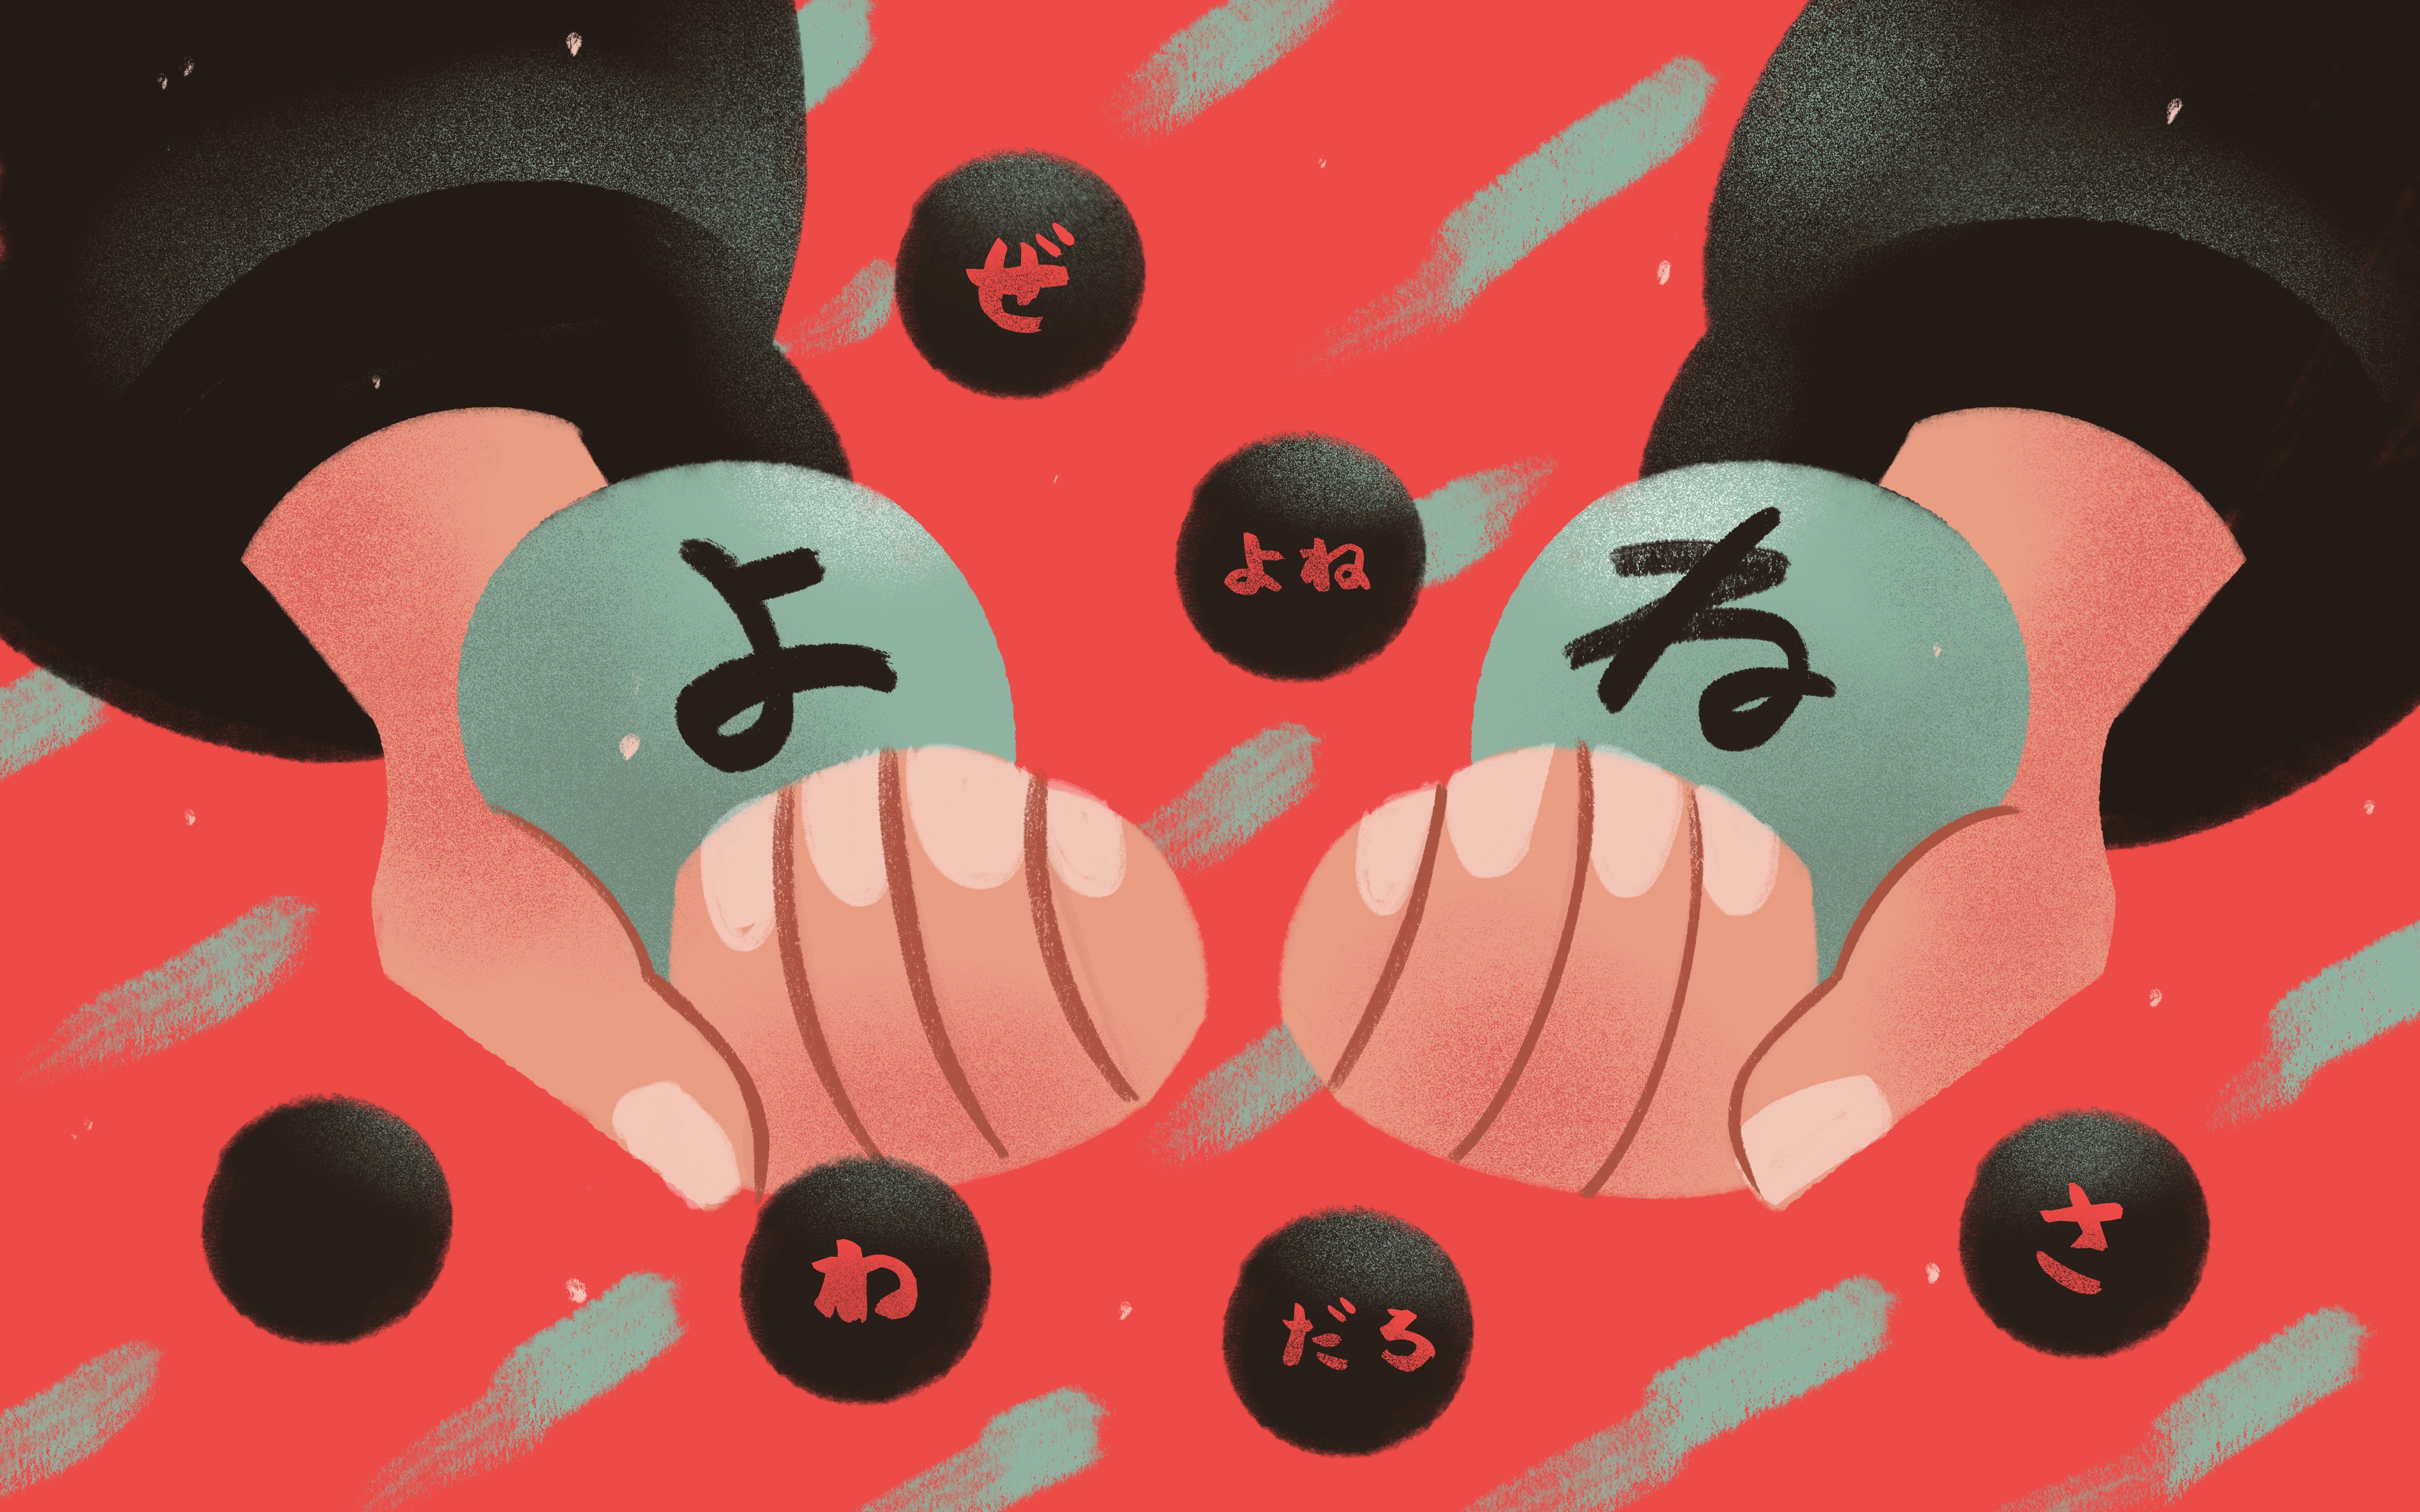 よ And ね What Do These Particles Really Mean To Japanese Speakers